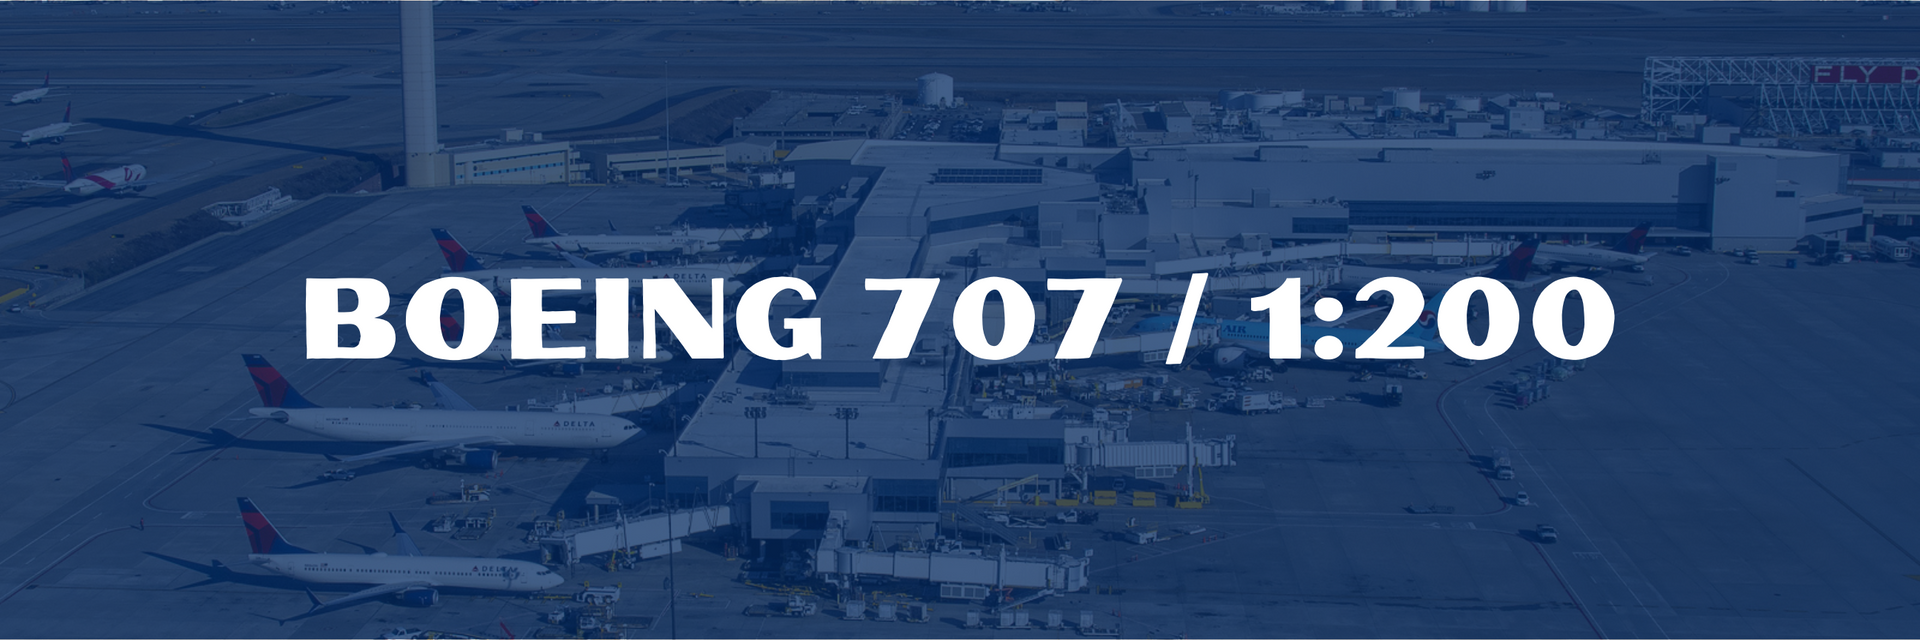 Boeing 707 / 1:200